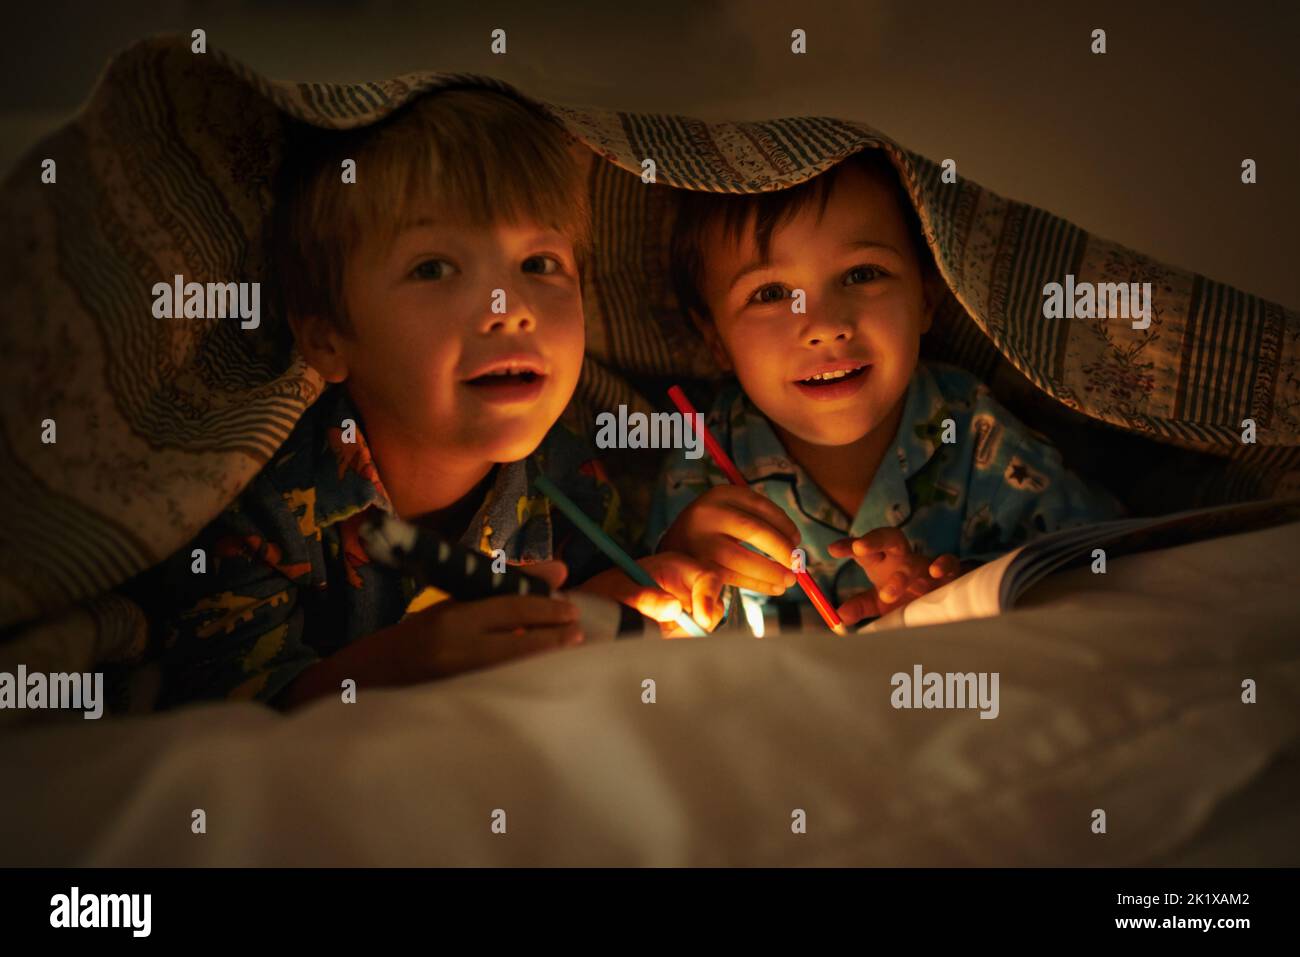 Maman dit que la lumière garde les mauvaises choses loin. Portrait de deux frères allongé sous leur couverture colorante en images avec une lampe de poche Banque D'Images